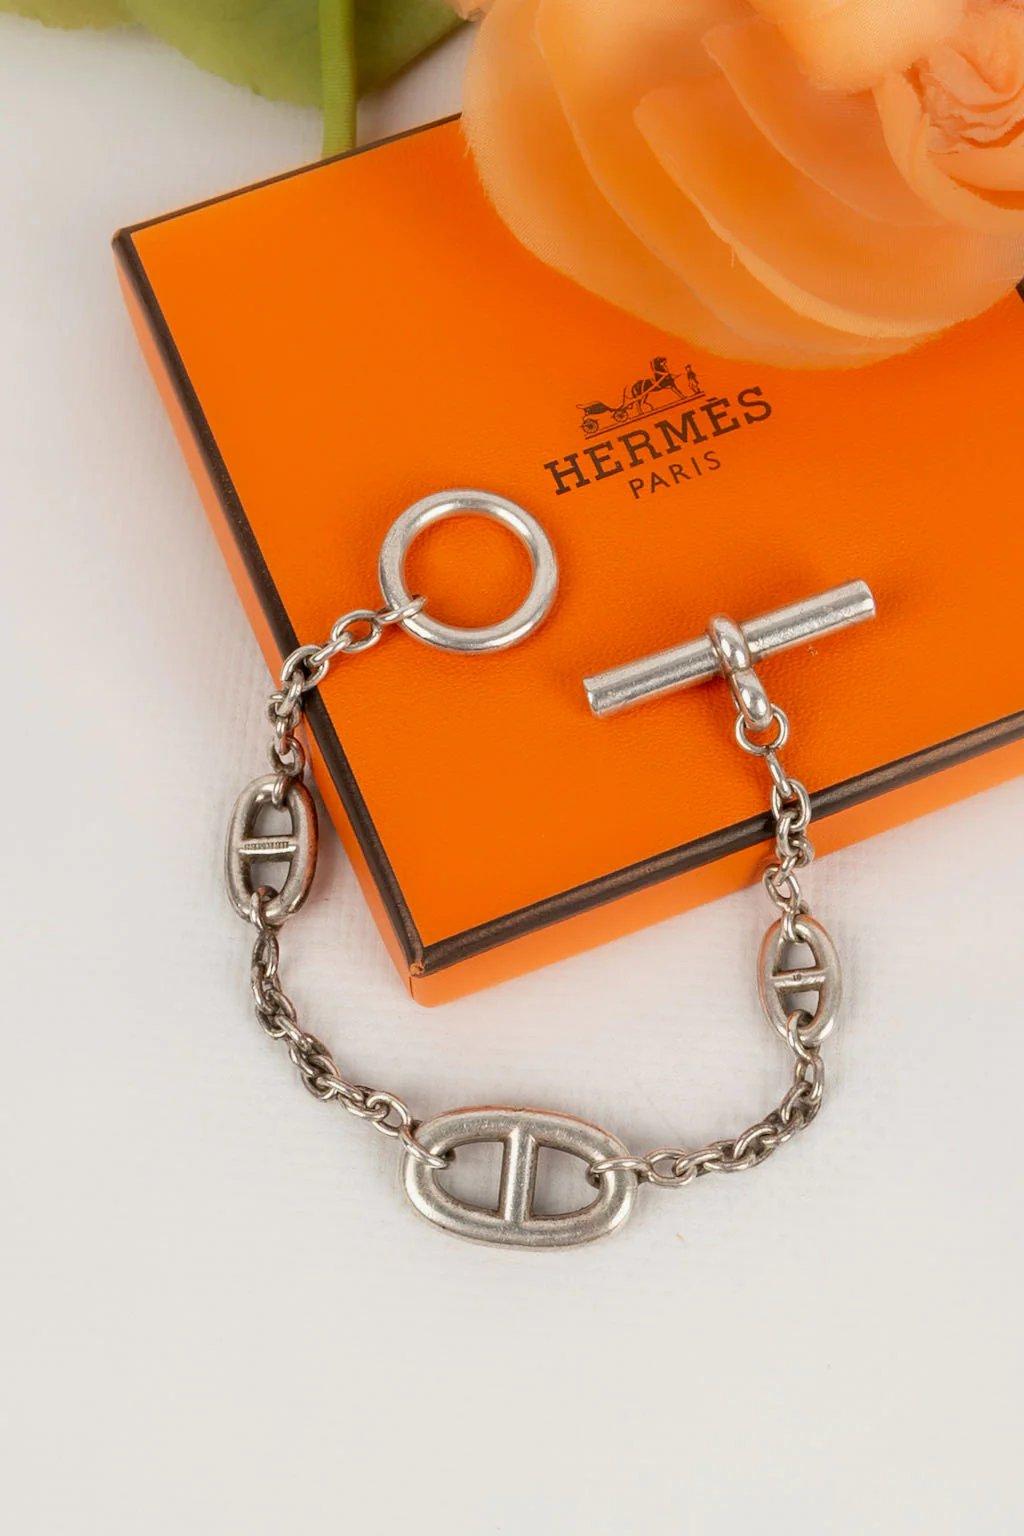 Hermes -(Fabriqué en France) Bracelet en argent modèle Farandole.

Informations complémentaires :

Dimensions : 
Longueur : 18 cm

Condit : Très bon état.

Numéro de référence du vendeur : BRA32